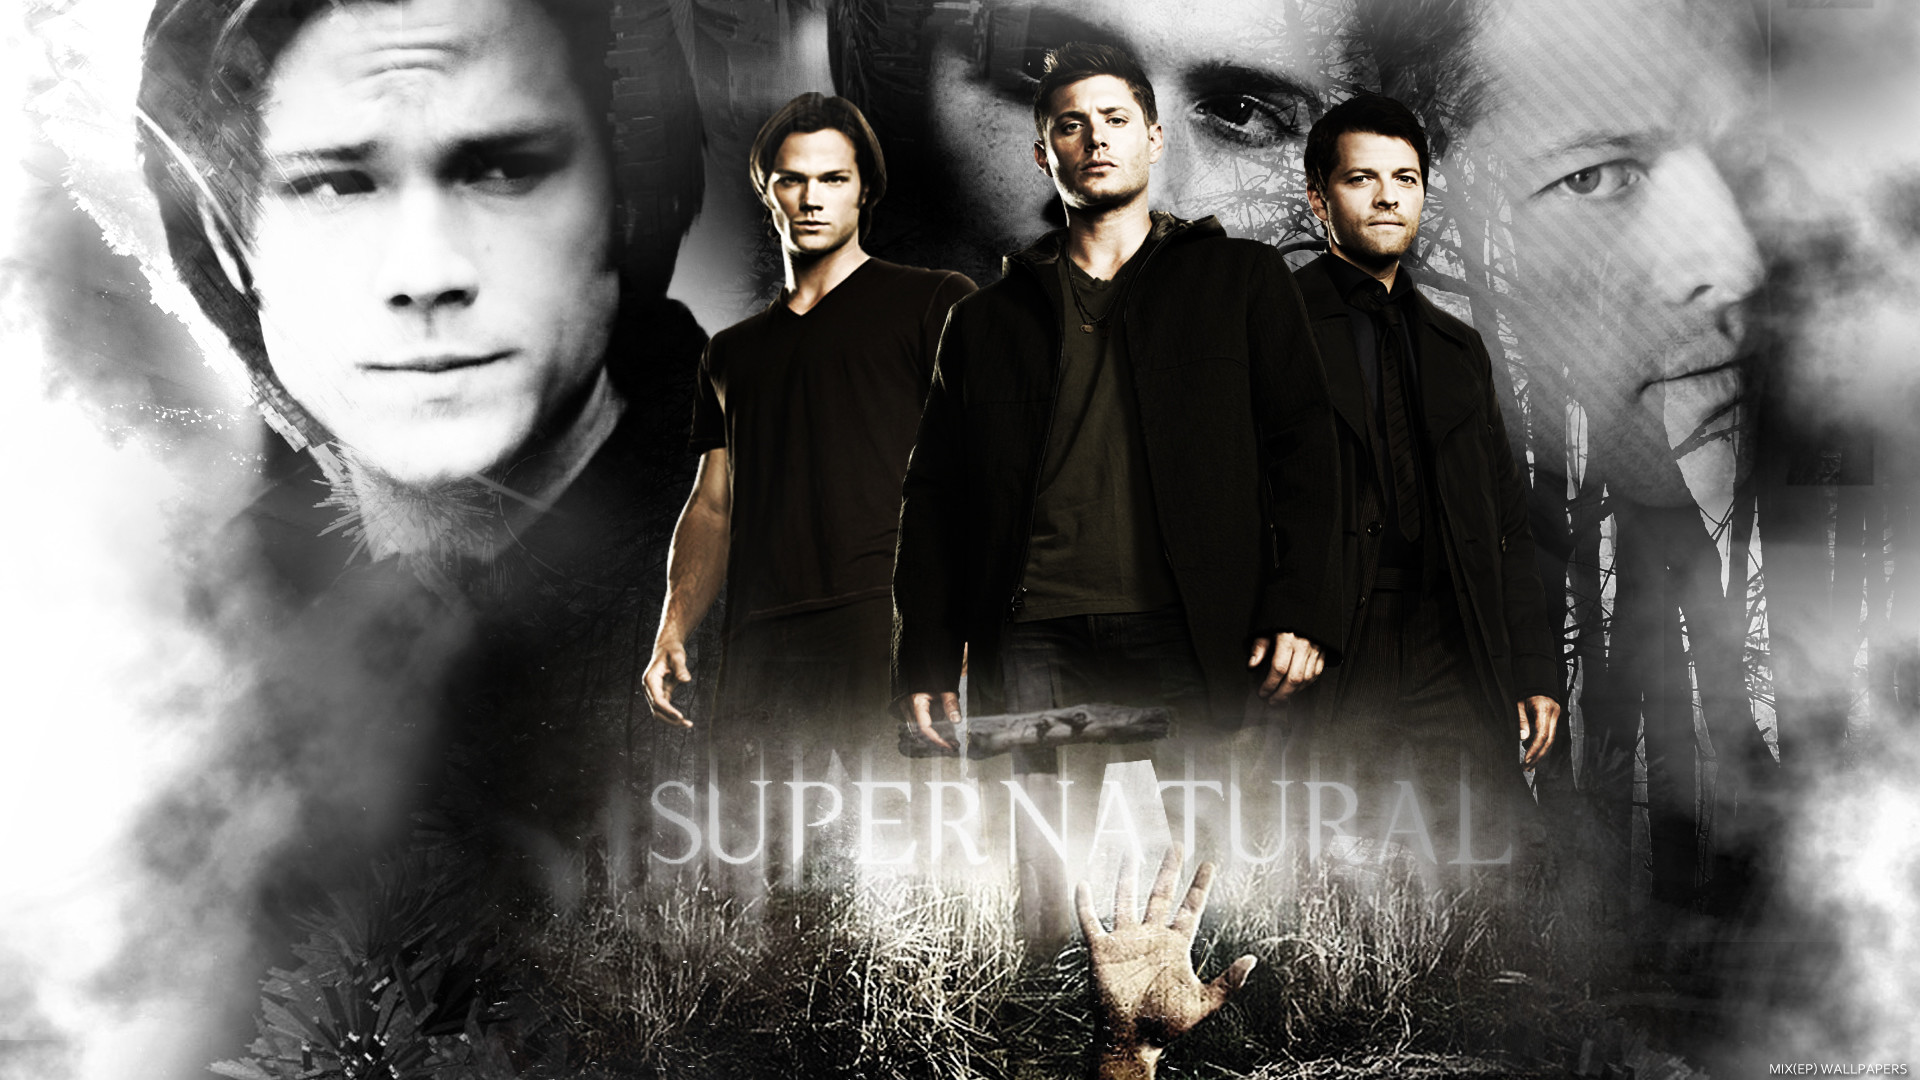 / supernatural / images / 33561497 / title / supernatural wallpaper